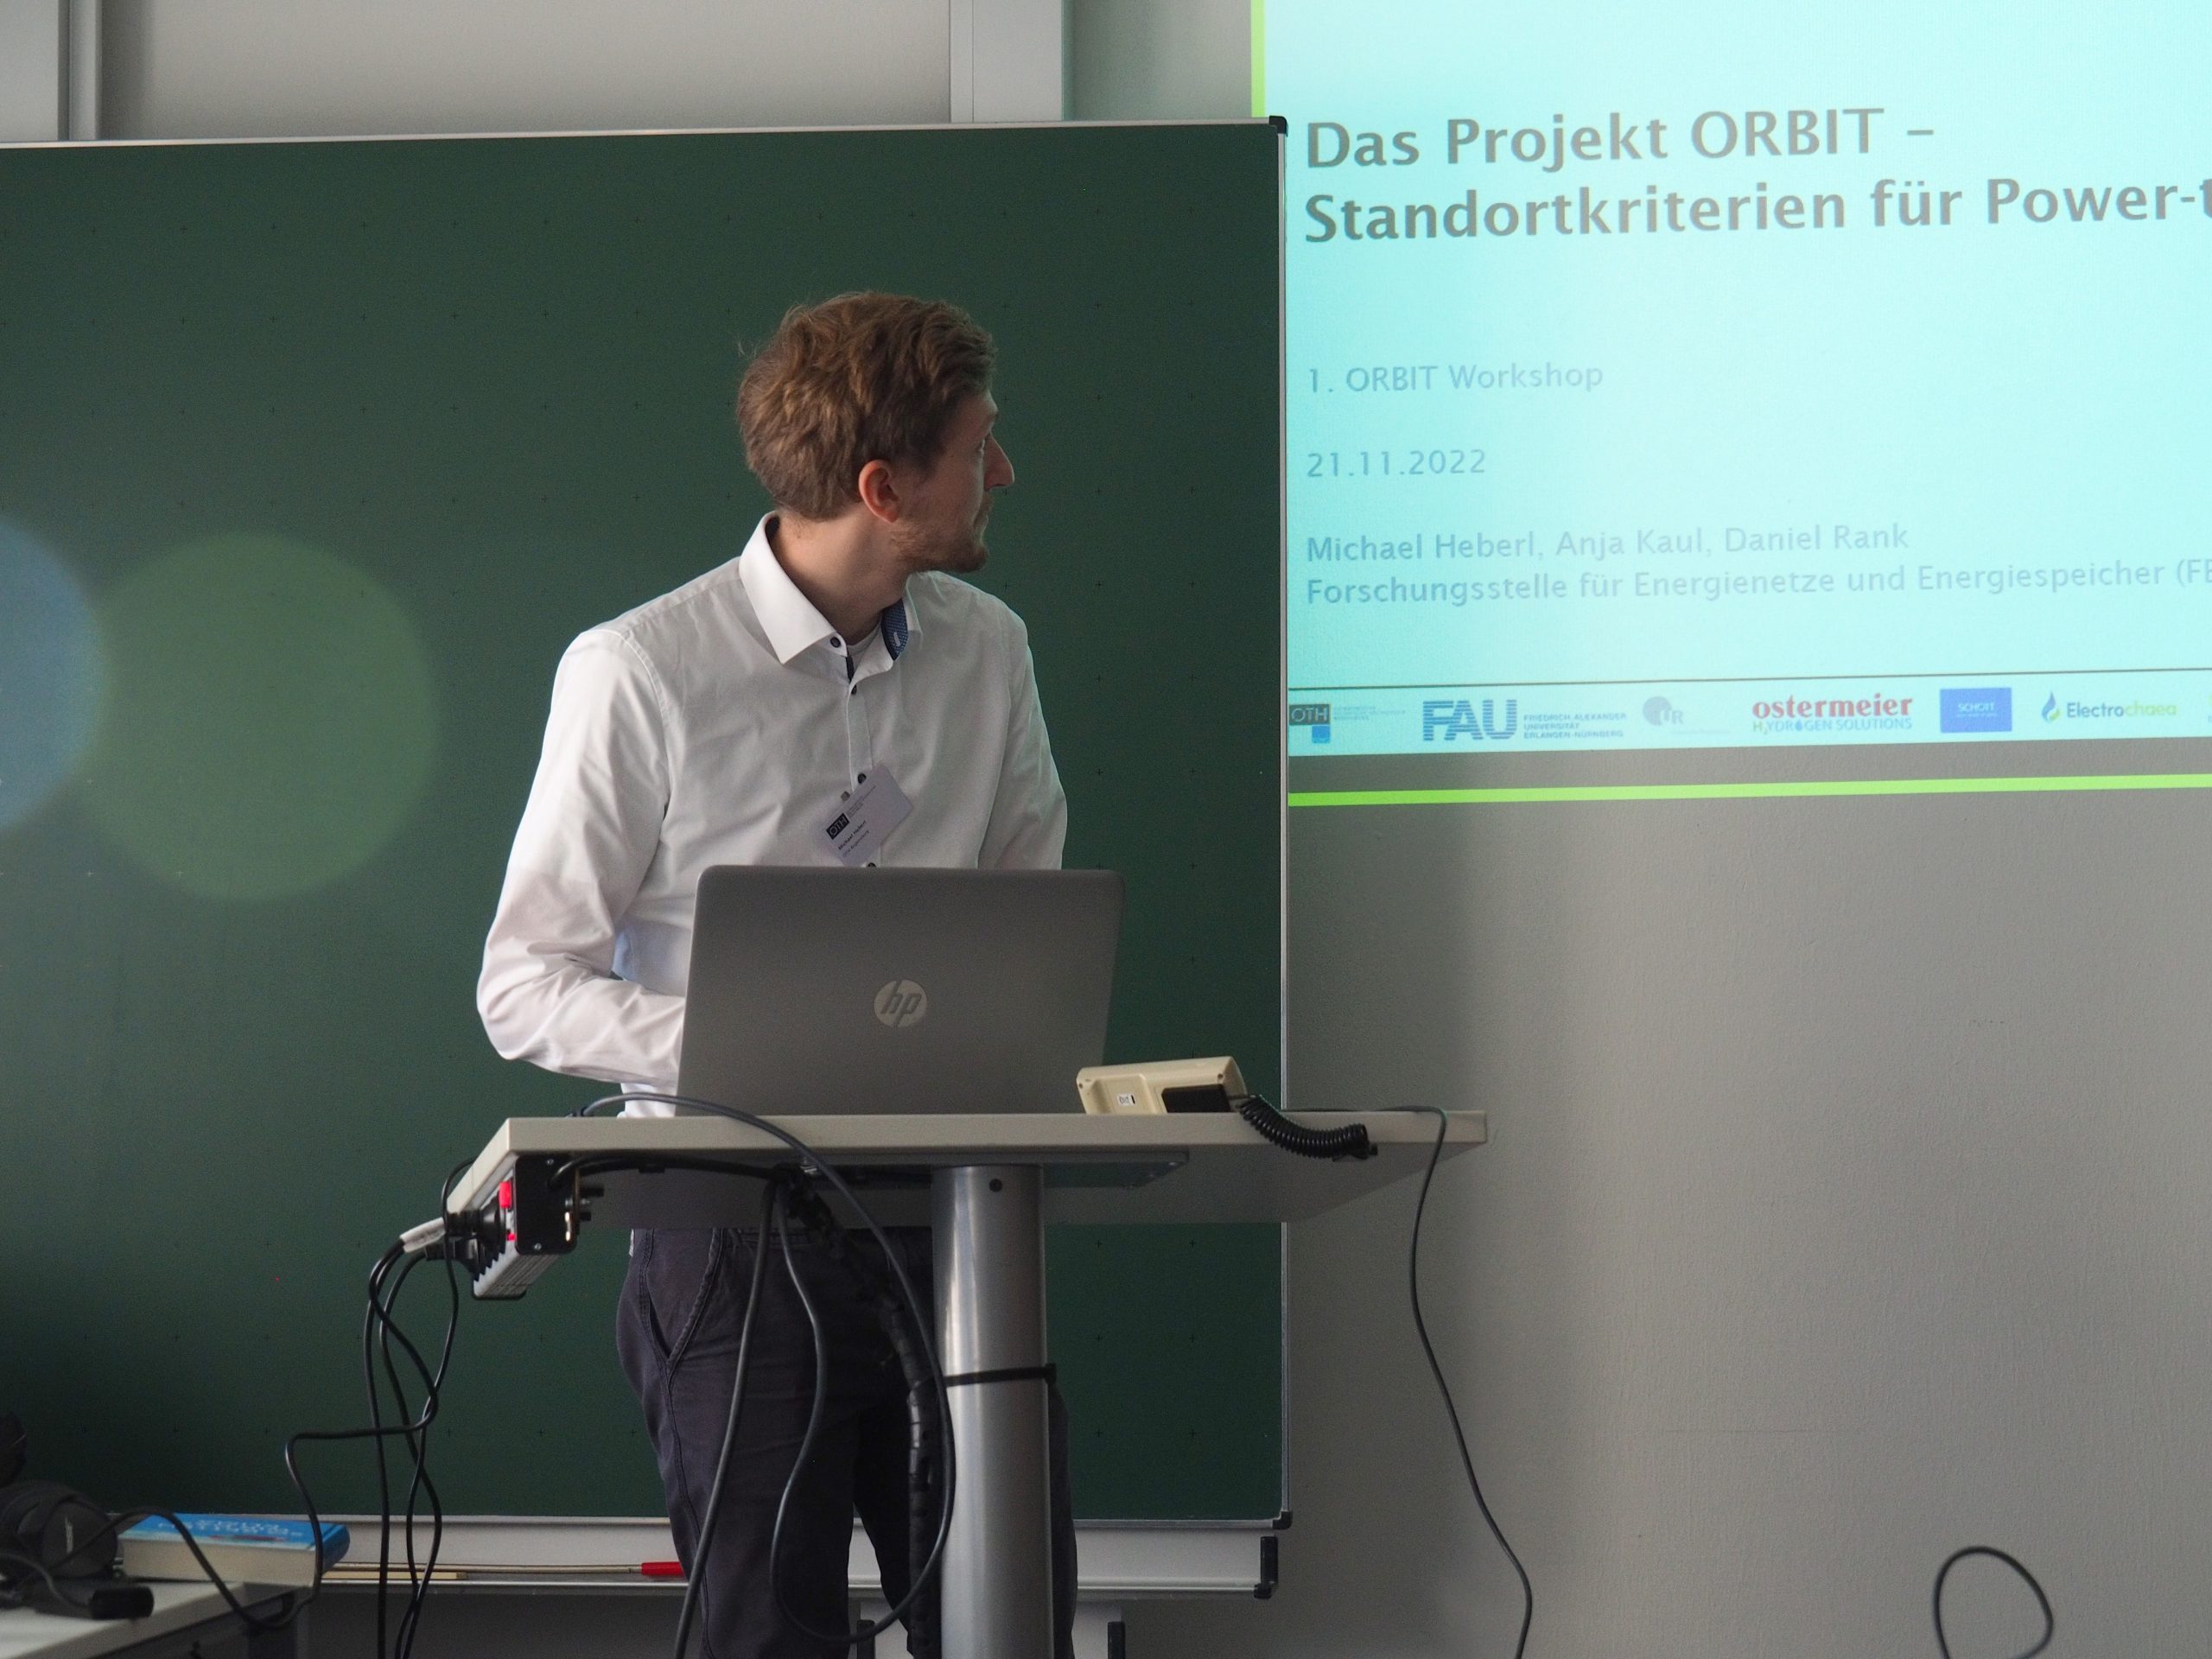 Michael Heberl vom ORBIT Team stellte das Projekt und Power-to-Gas Standortkriterien vor. Foto: Anja Kaul